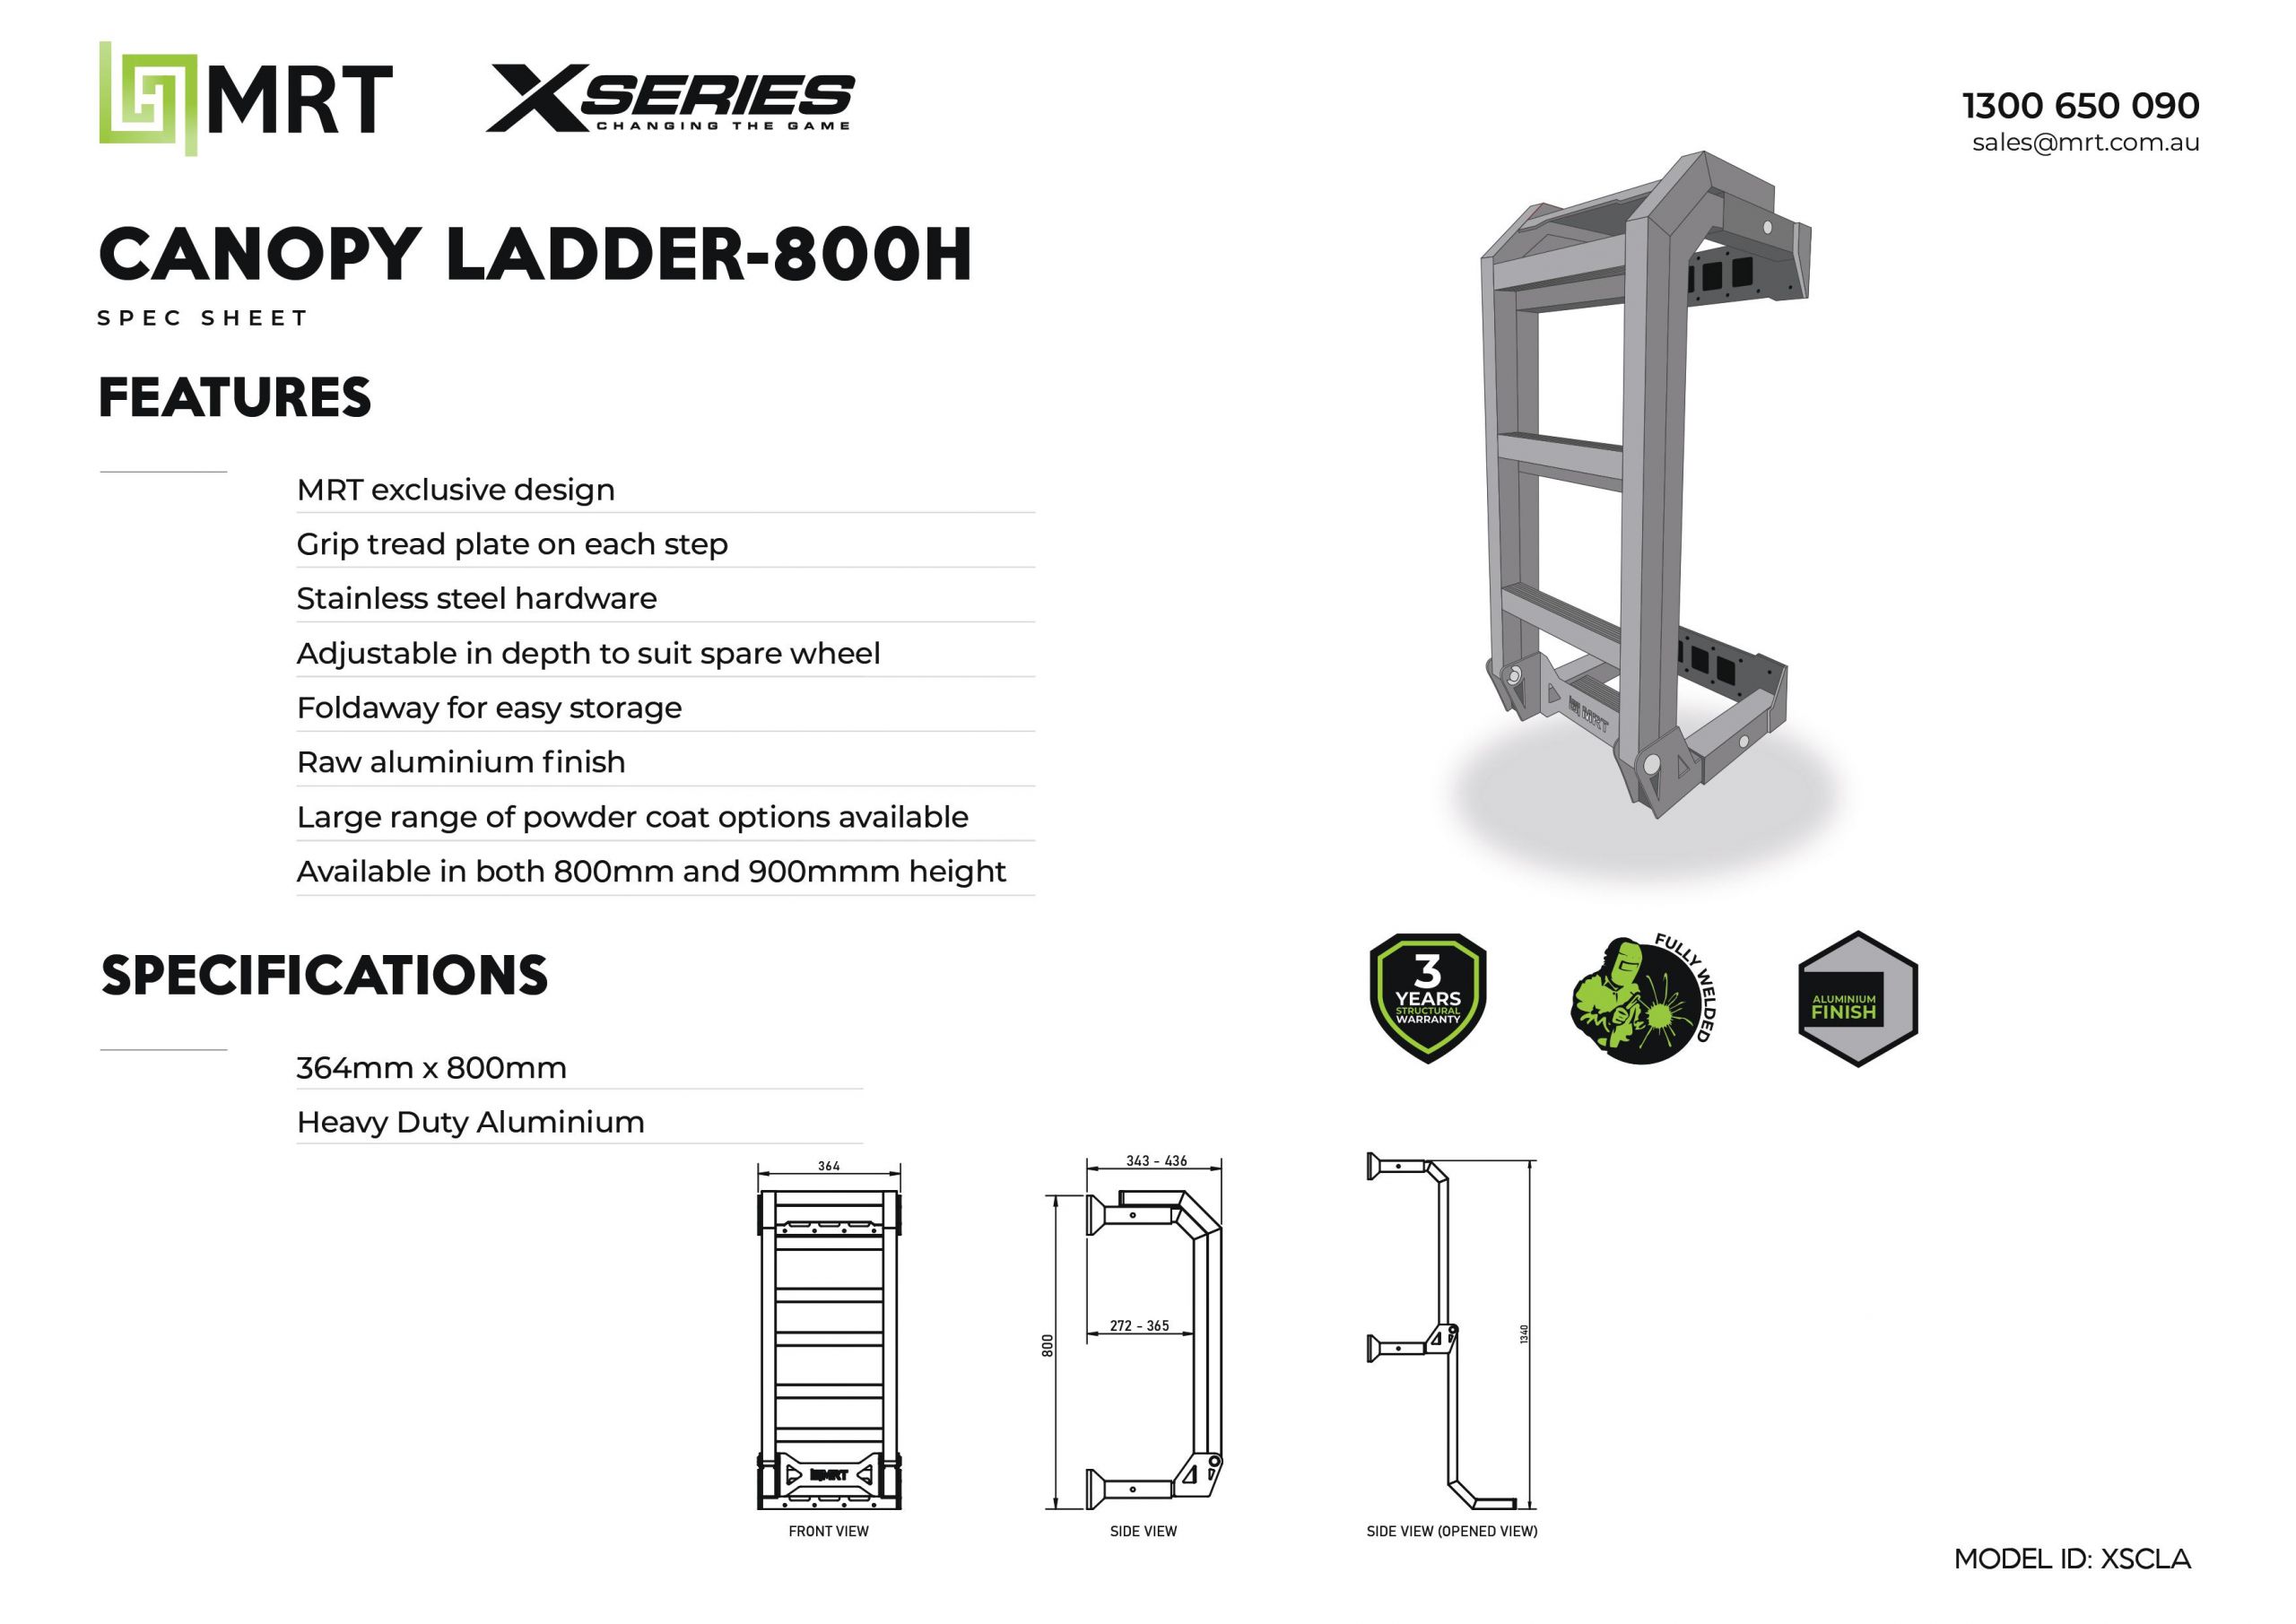 MRT ute canopy ladder